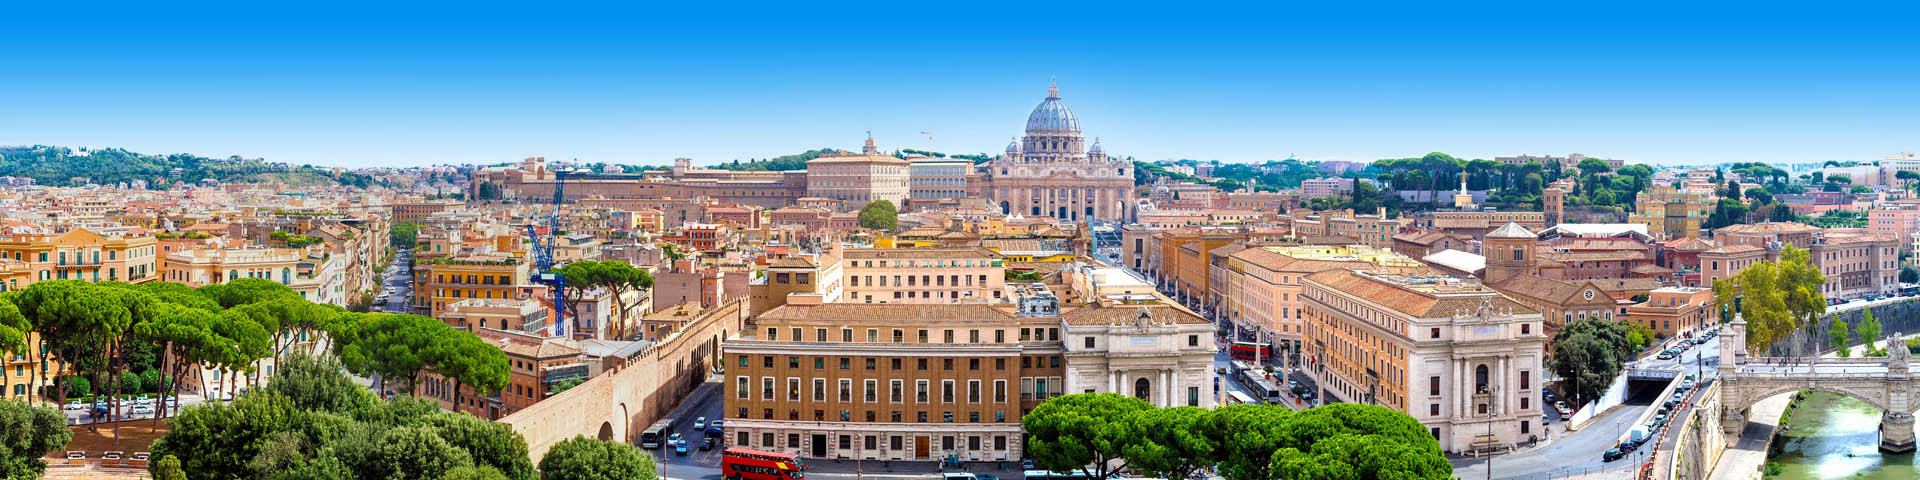 Citytrip uitzicht op de Sint Pieter in Rome